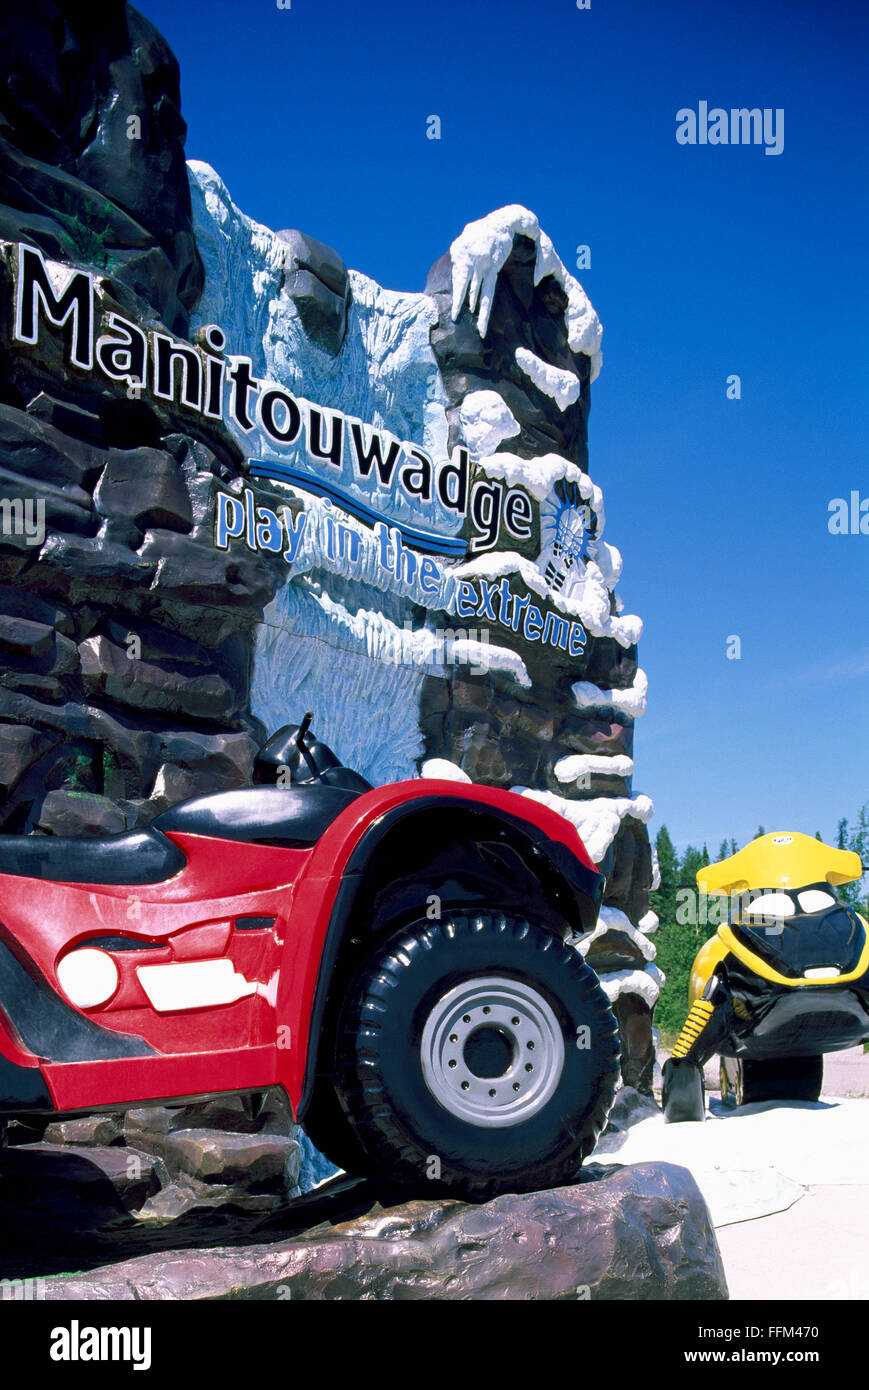 Willkommen Sie Schild nach Stadt Manitouwadge, Ontario, Kanada - ATV und Skidoo präsentieren lokale Sommer und Winter-Freizeitaktivitäten Stockfoto